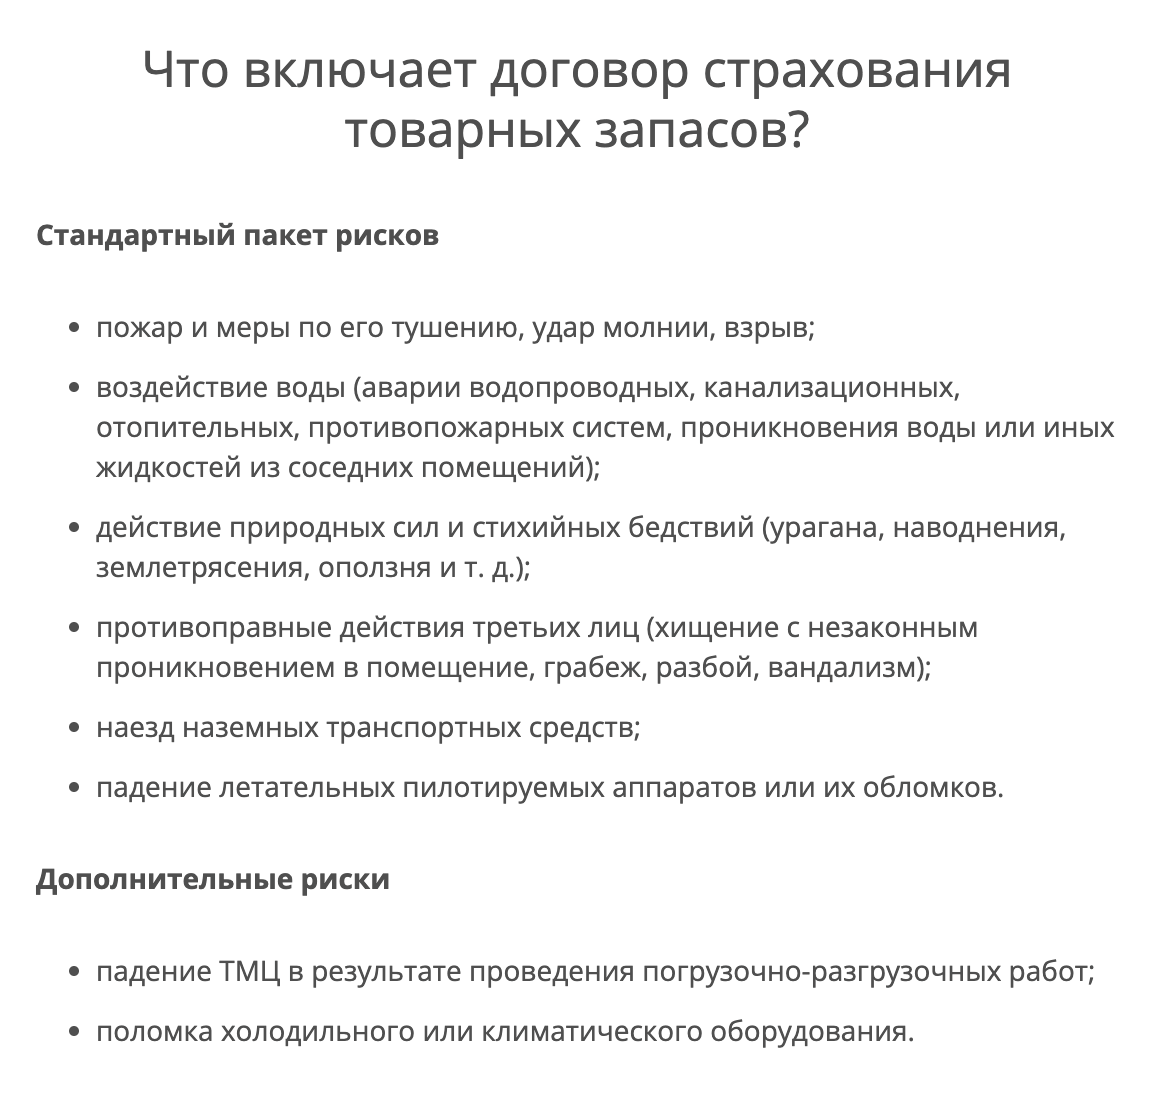 Пример рисков, от которых компания готова застраховать товар на складе. Источник: skpari.ru